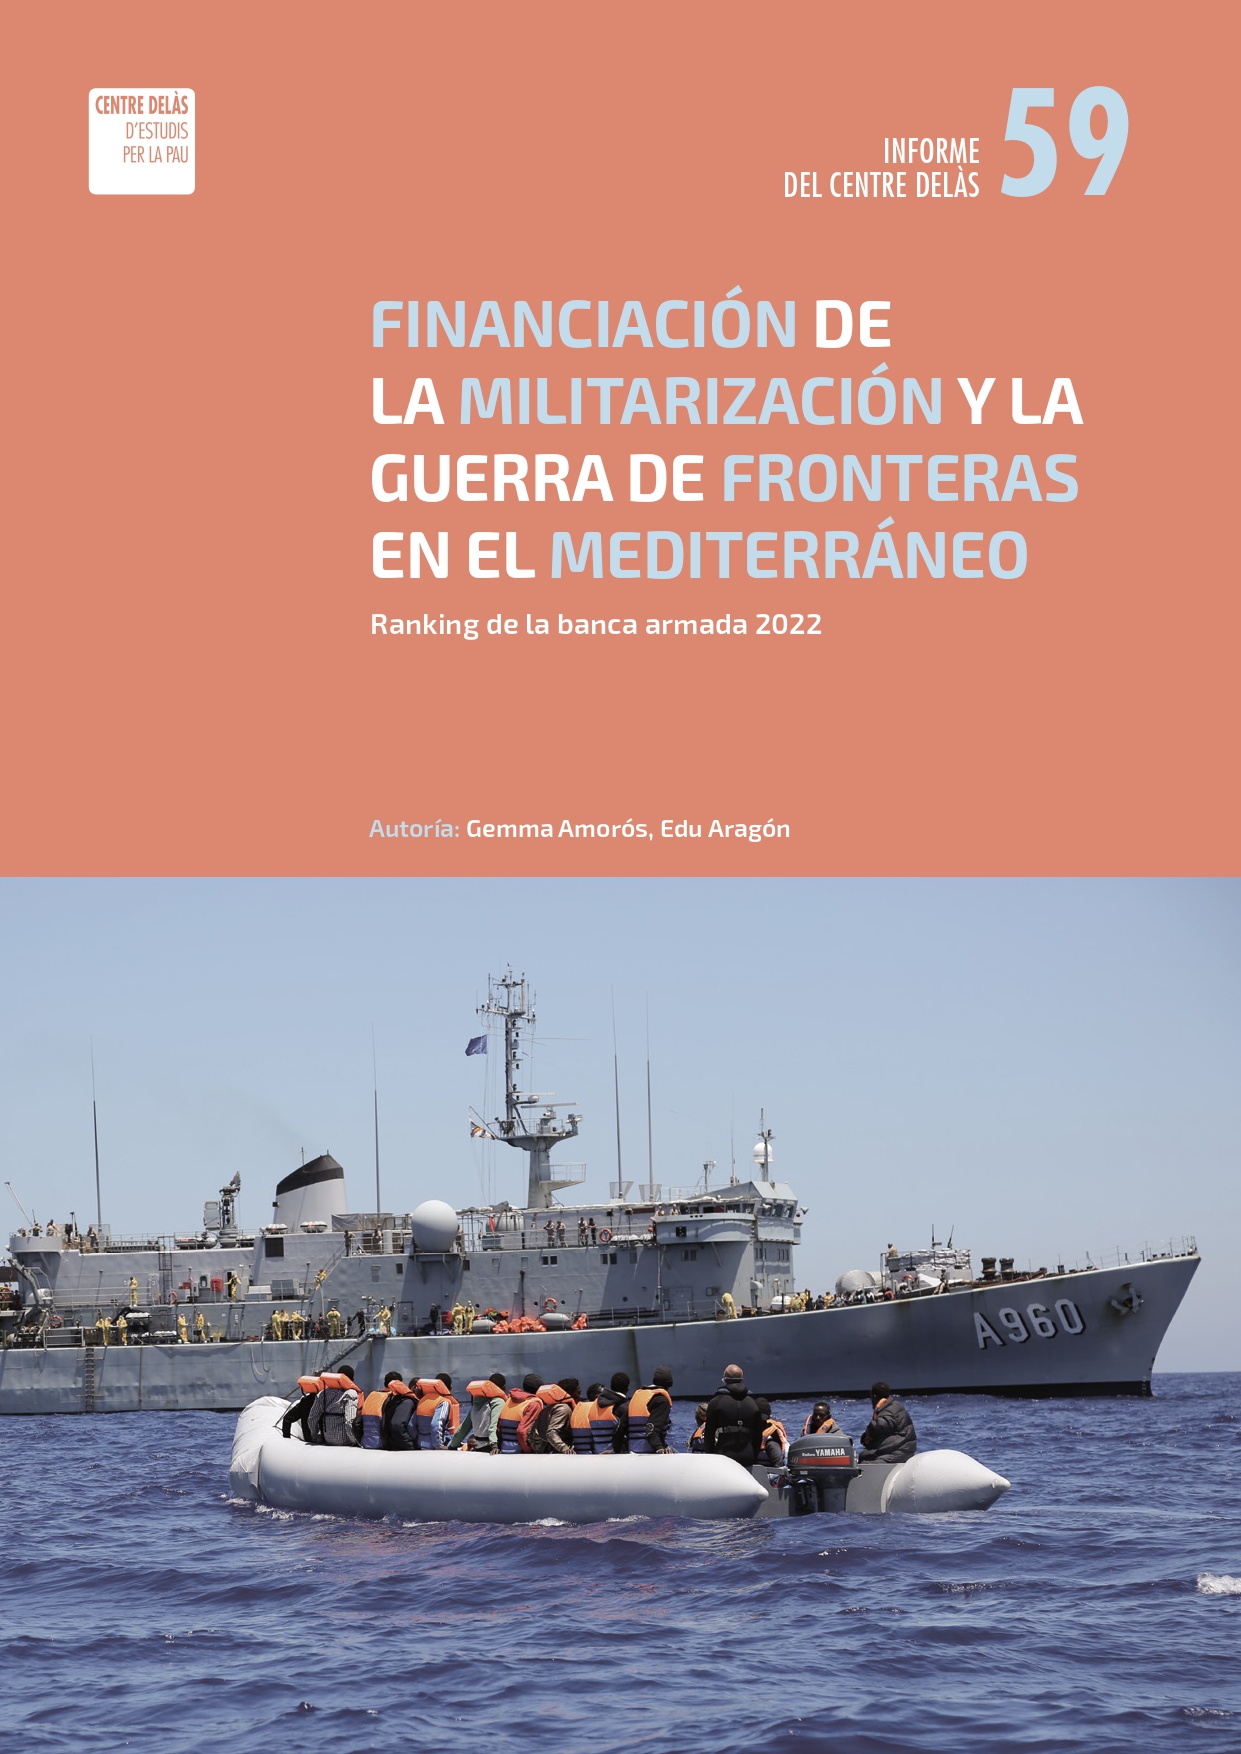 Informe 59: “Finançament de la militarització i la guerra de fronteres a la Mediterrània”